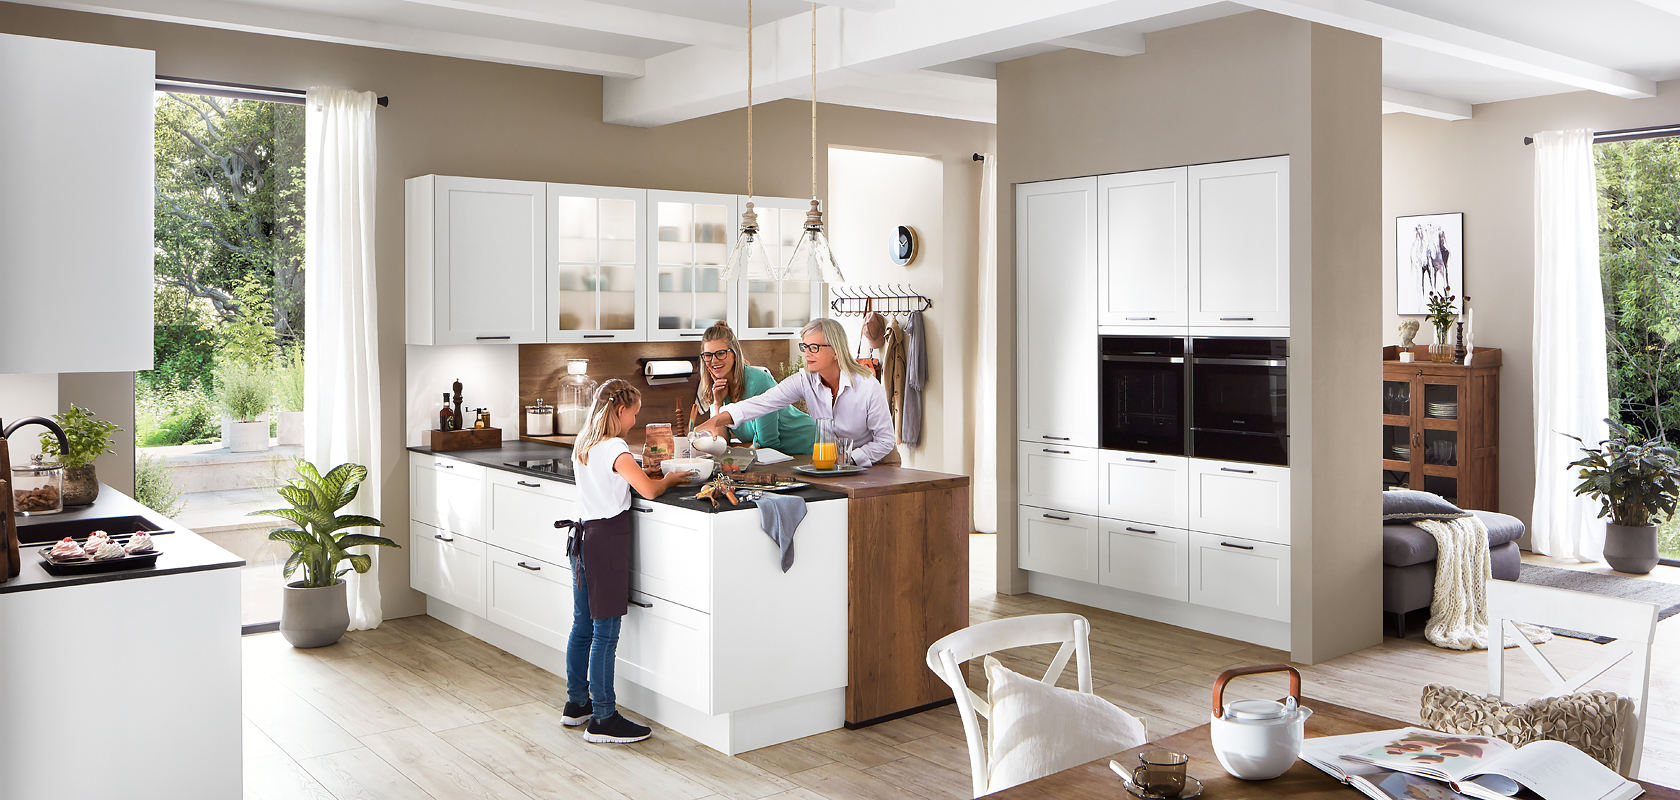 Une cuisine moderne baignée de lumière naturelle où une famille passe du temps ensemble, mettant en valeur des armoires blanches élégantes et des appareils en acier inoxydable.